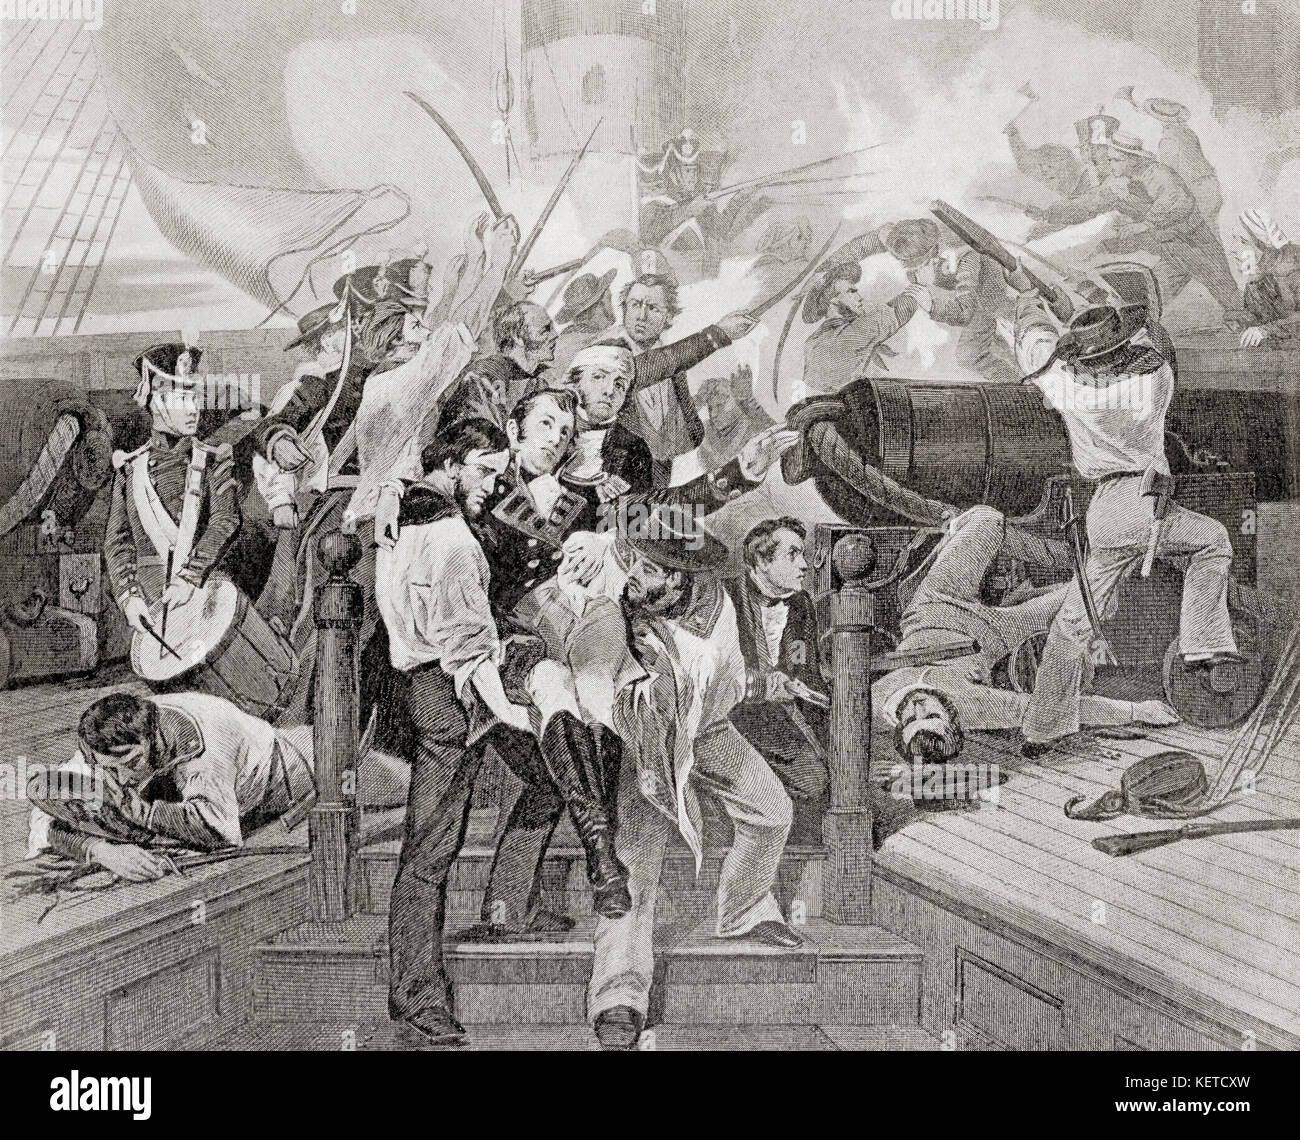 La muerte de James Lawrence a bordo del USS Chesapeake después de una acción de un solo barco contra el HMS Shannon durante la Guerra de 1812. James Lawrence, 1781 – 1813. Oficial naval estadounidense. De Historia de las Naciones de Hutchinson, publicado en 1915. Foto de stock